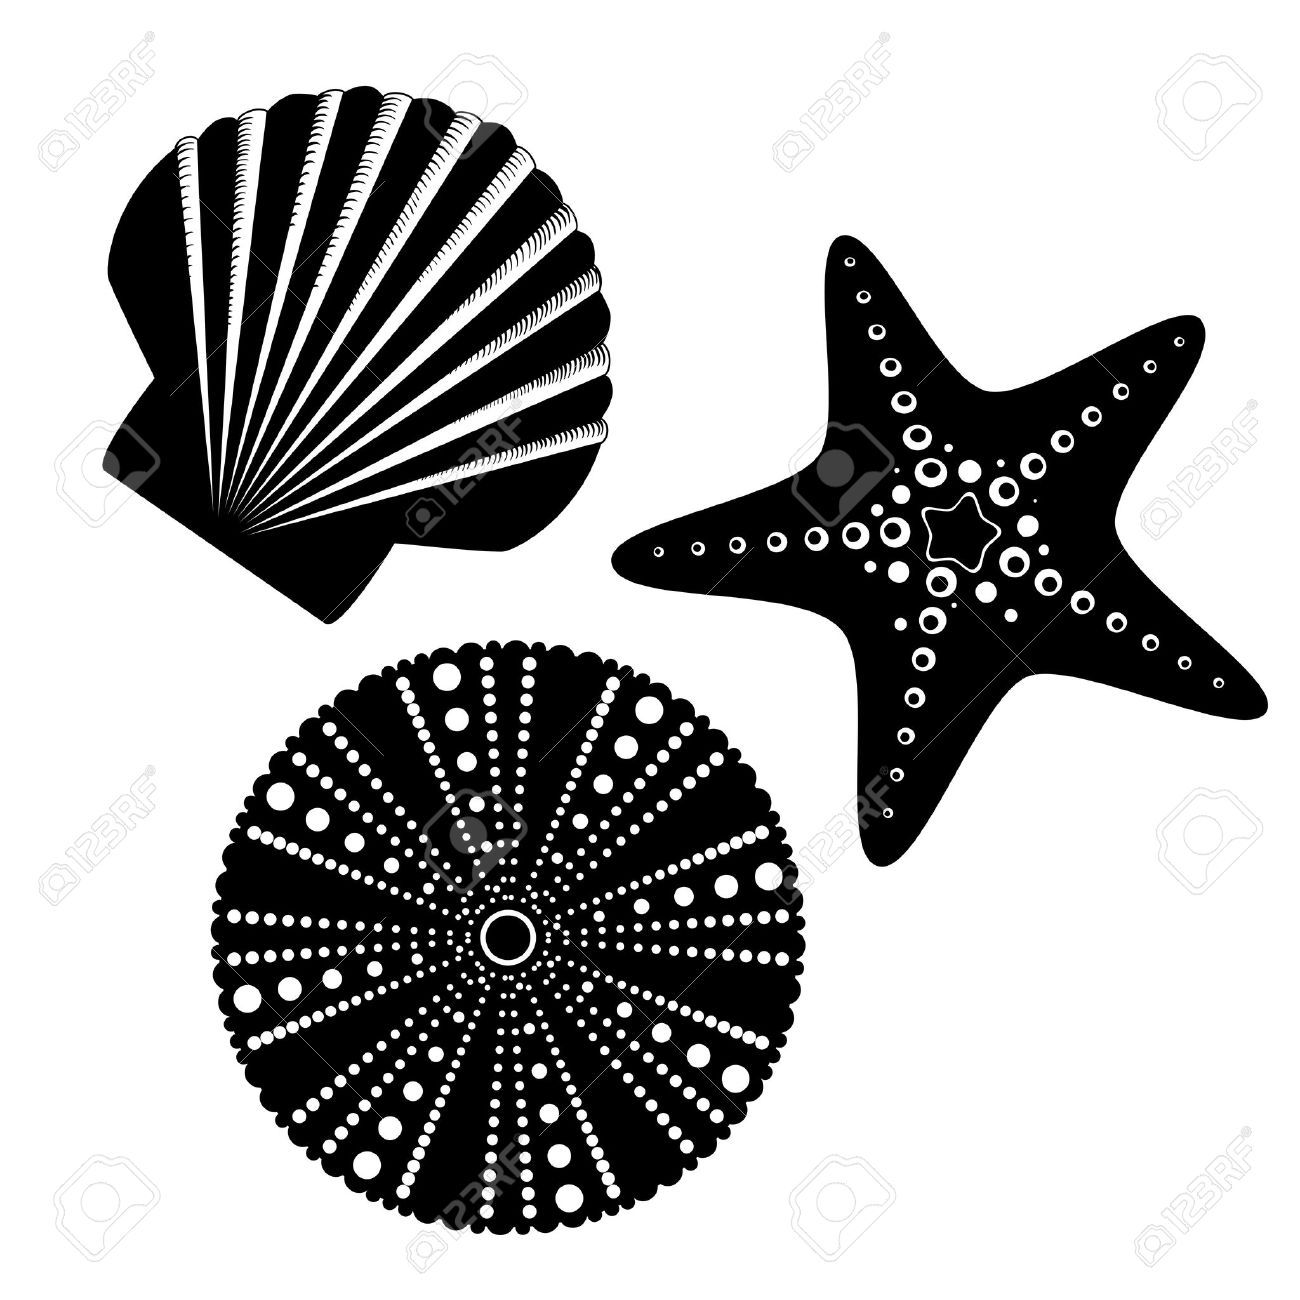 starfish clipart sea urchin